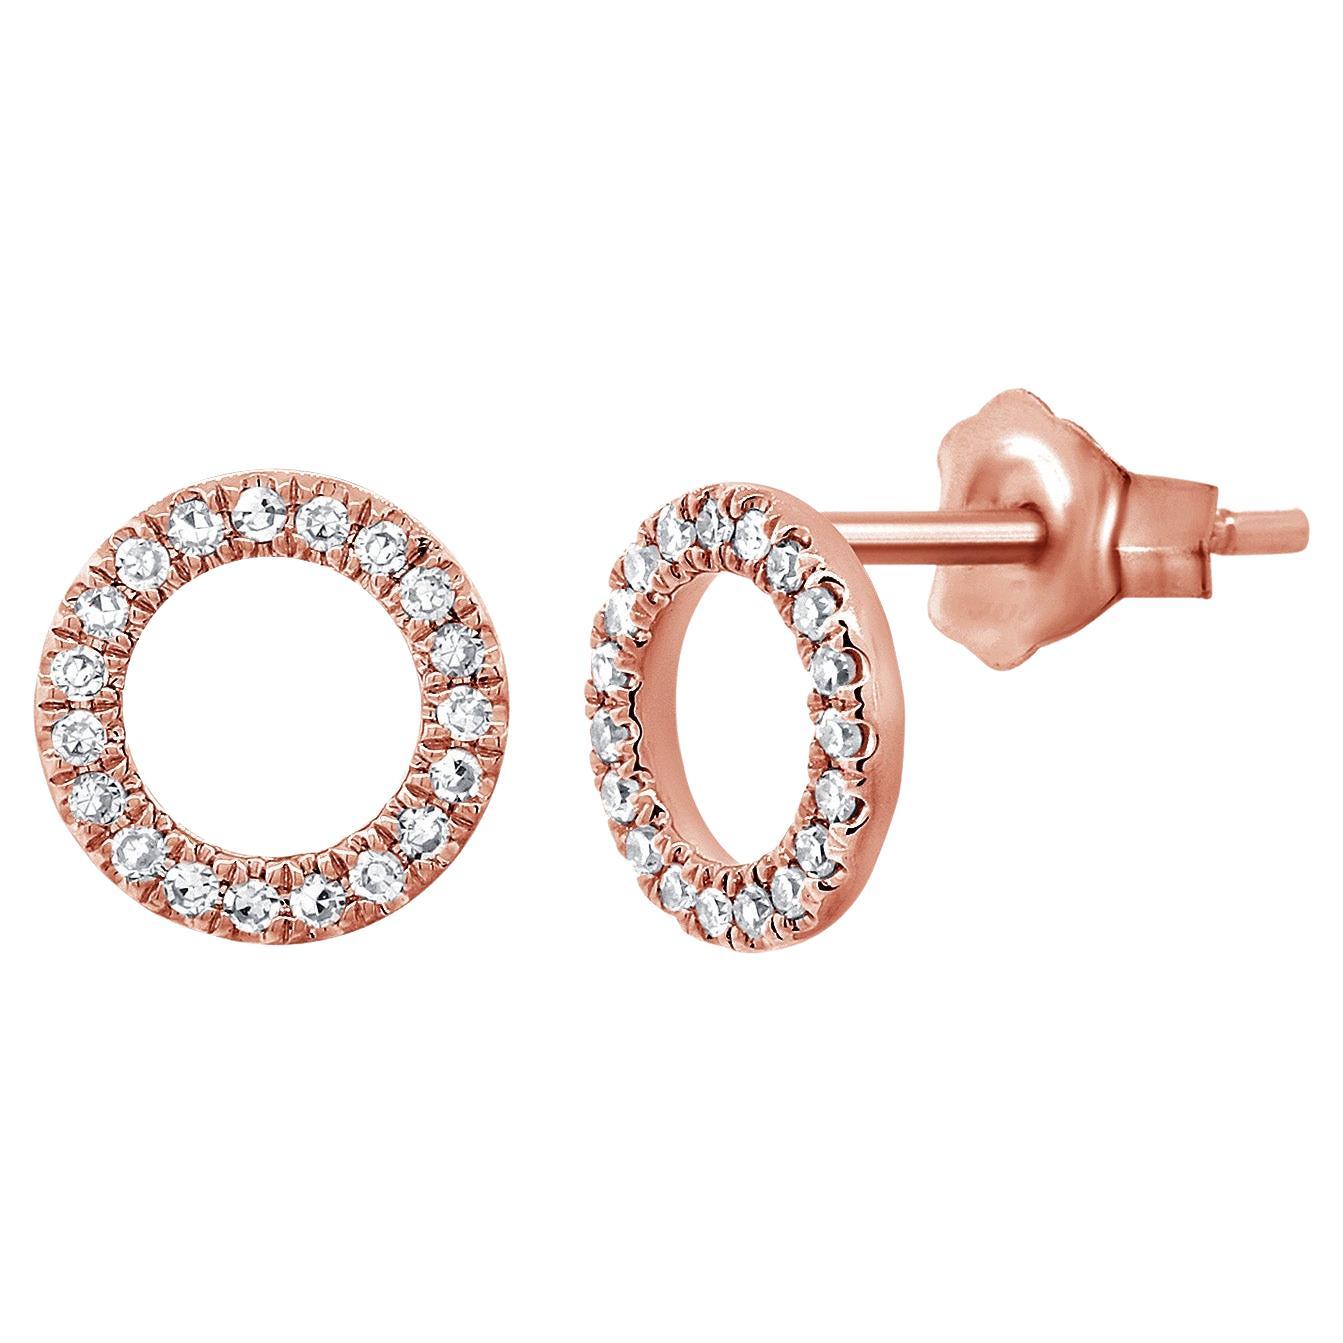 14K Rose Gold Open Circle Diamond Stud Earrings for Her